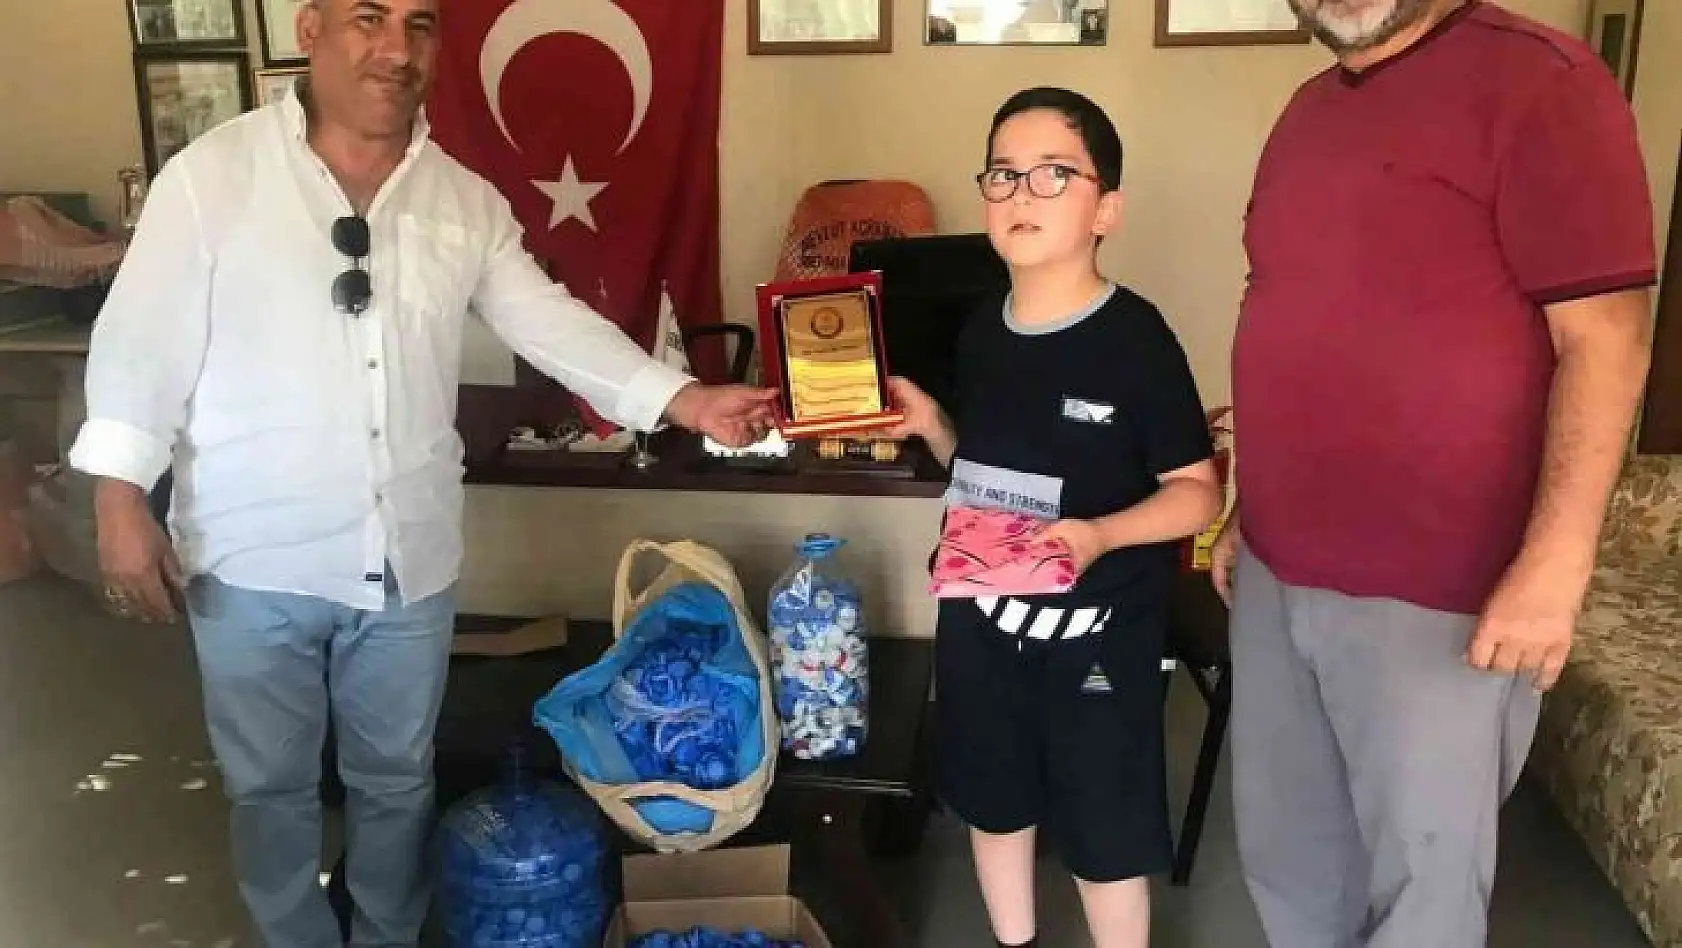 Milas'ta 9 yaşındaki Yiğit'ten örnek davranış